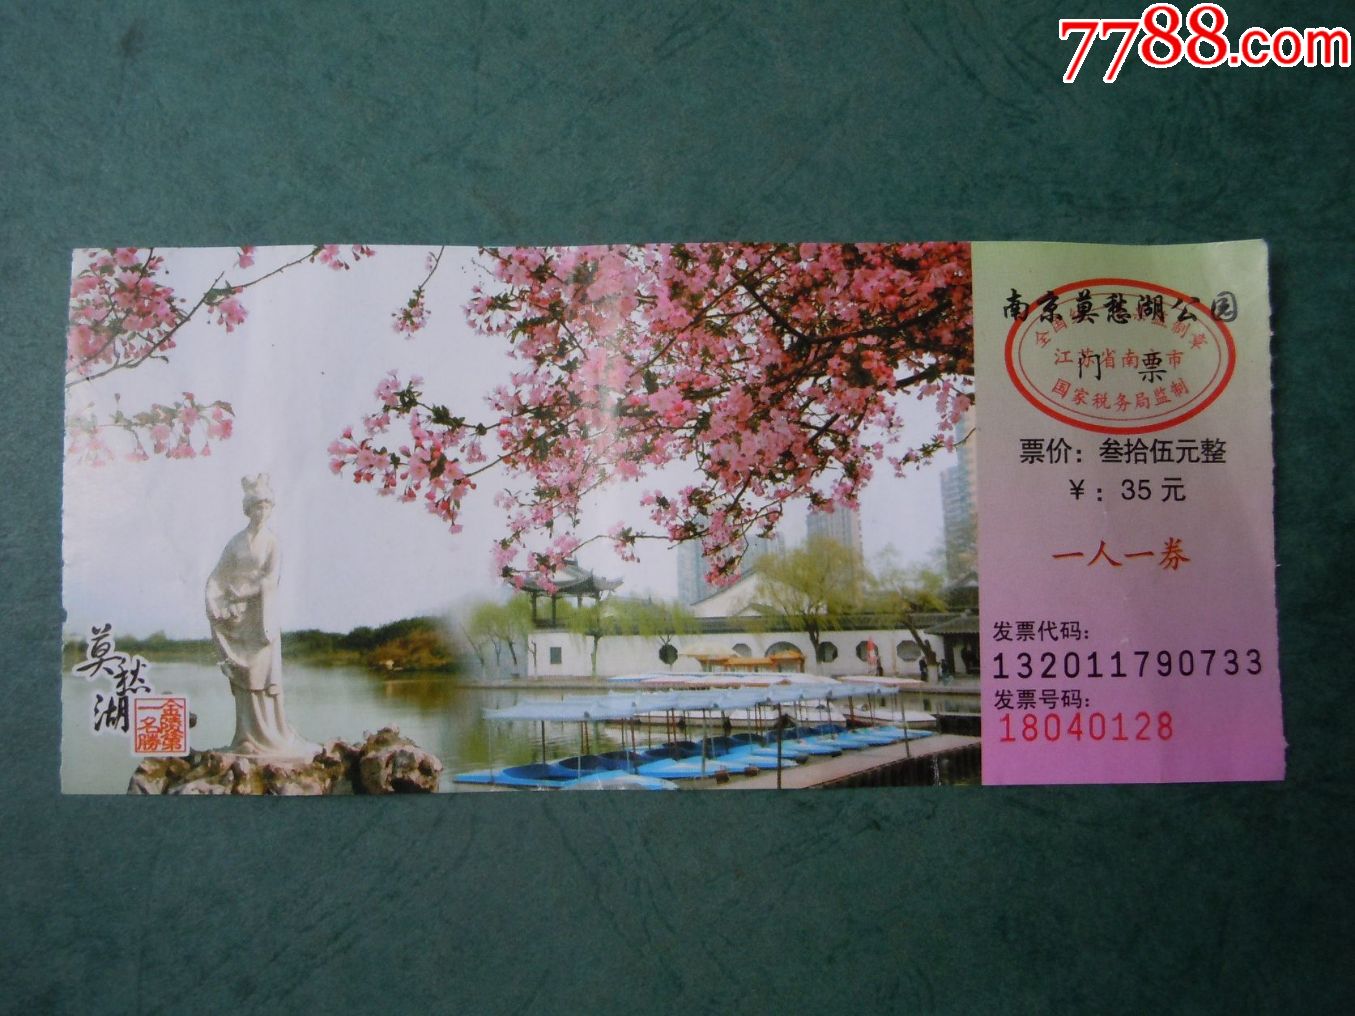 南京莫愁湖公园(35元券)_旅游景点门票_回忆阁【7788收藏】